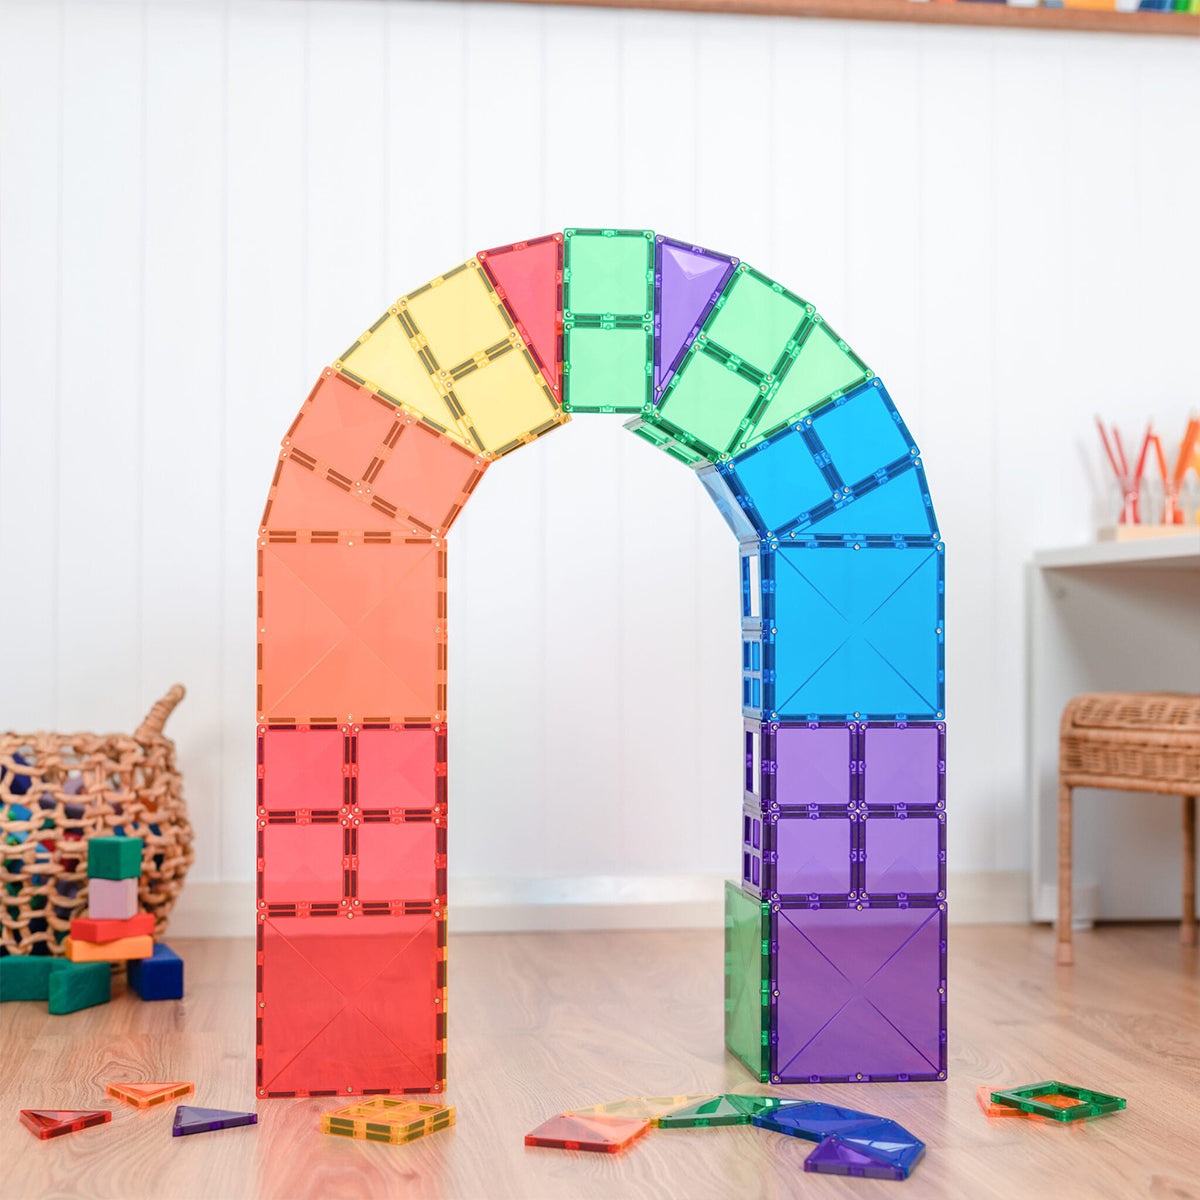 Laat het speelplezier maar beginnen met deze mooie glinsterende Connetix rainbow starter pack 60 stuks! Met deze bouwset kan je kindje de mooiste bouwwerken maken in vrolijke kleuren. Deze bouwset bevat tegels in verschillende vormen waarmee je kindje de meest fantastische bouwwerken kan maken. VanZus